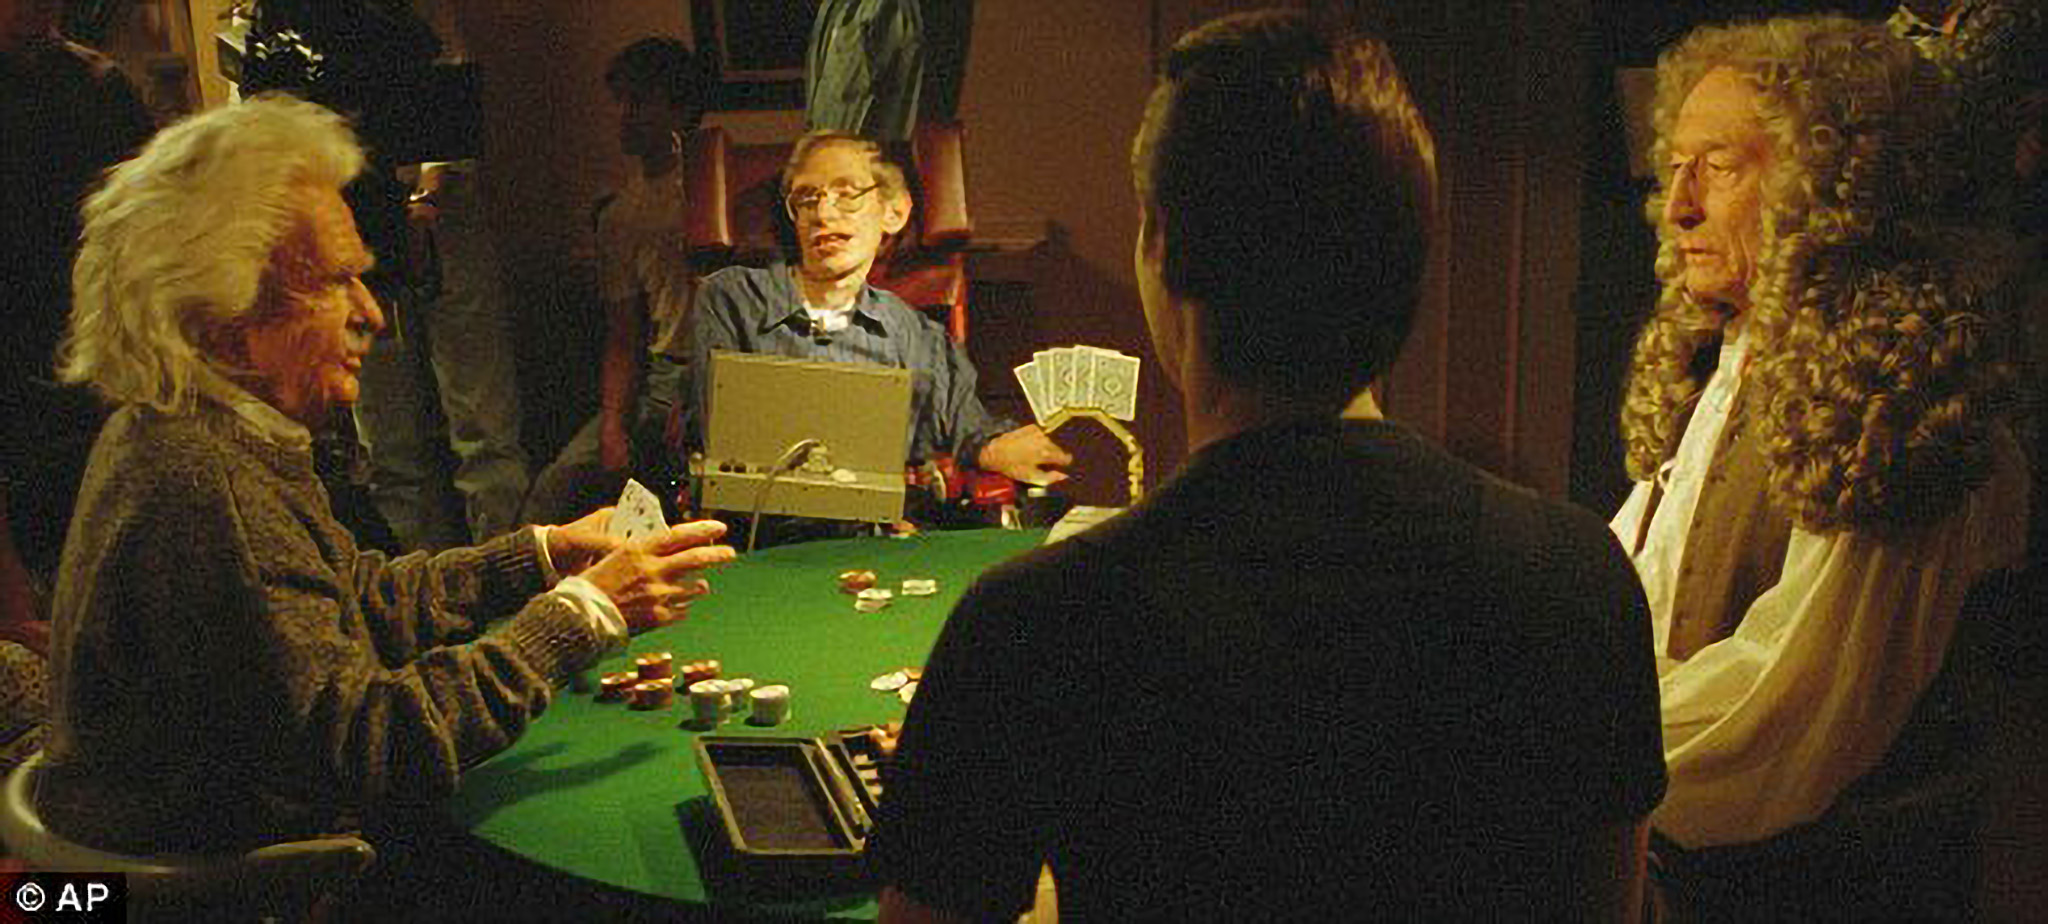 Hawking in a scene from Star Trek.jpg